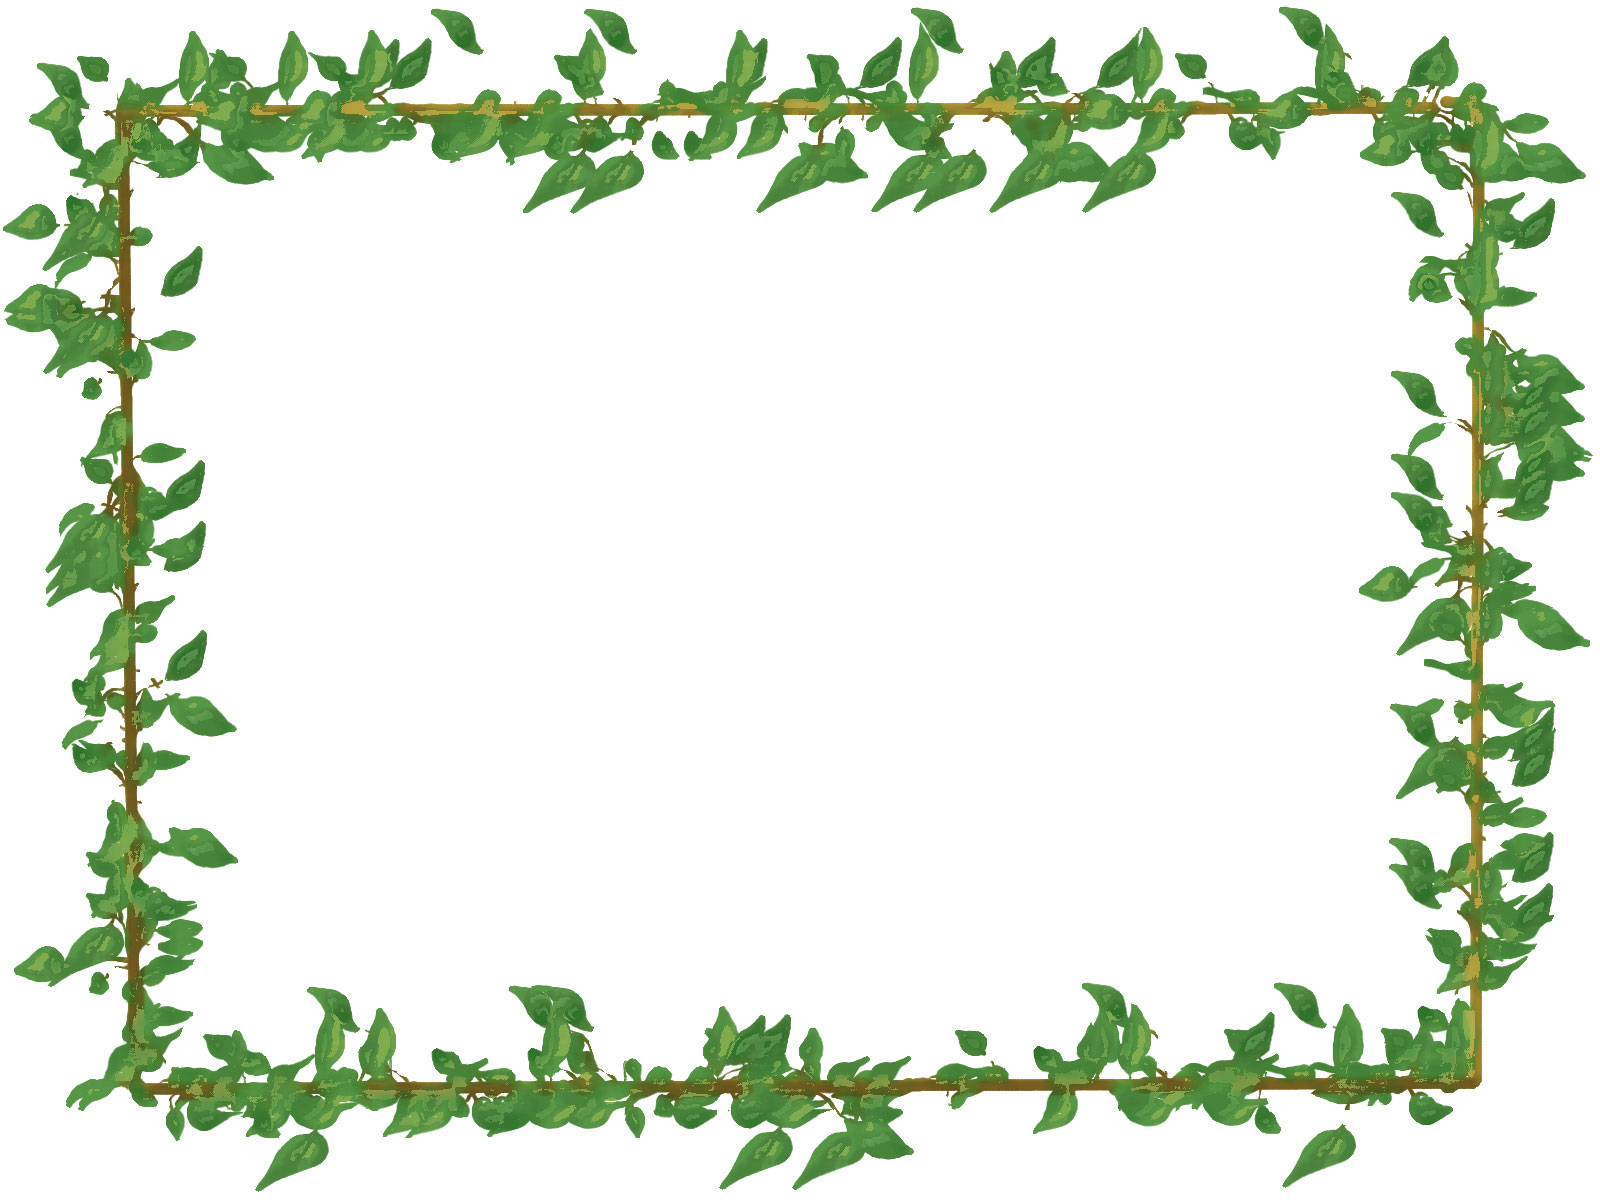 葉っぱ 草木のイラスト フリー素材 フレーム枠no 115 からまる葉 緑